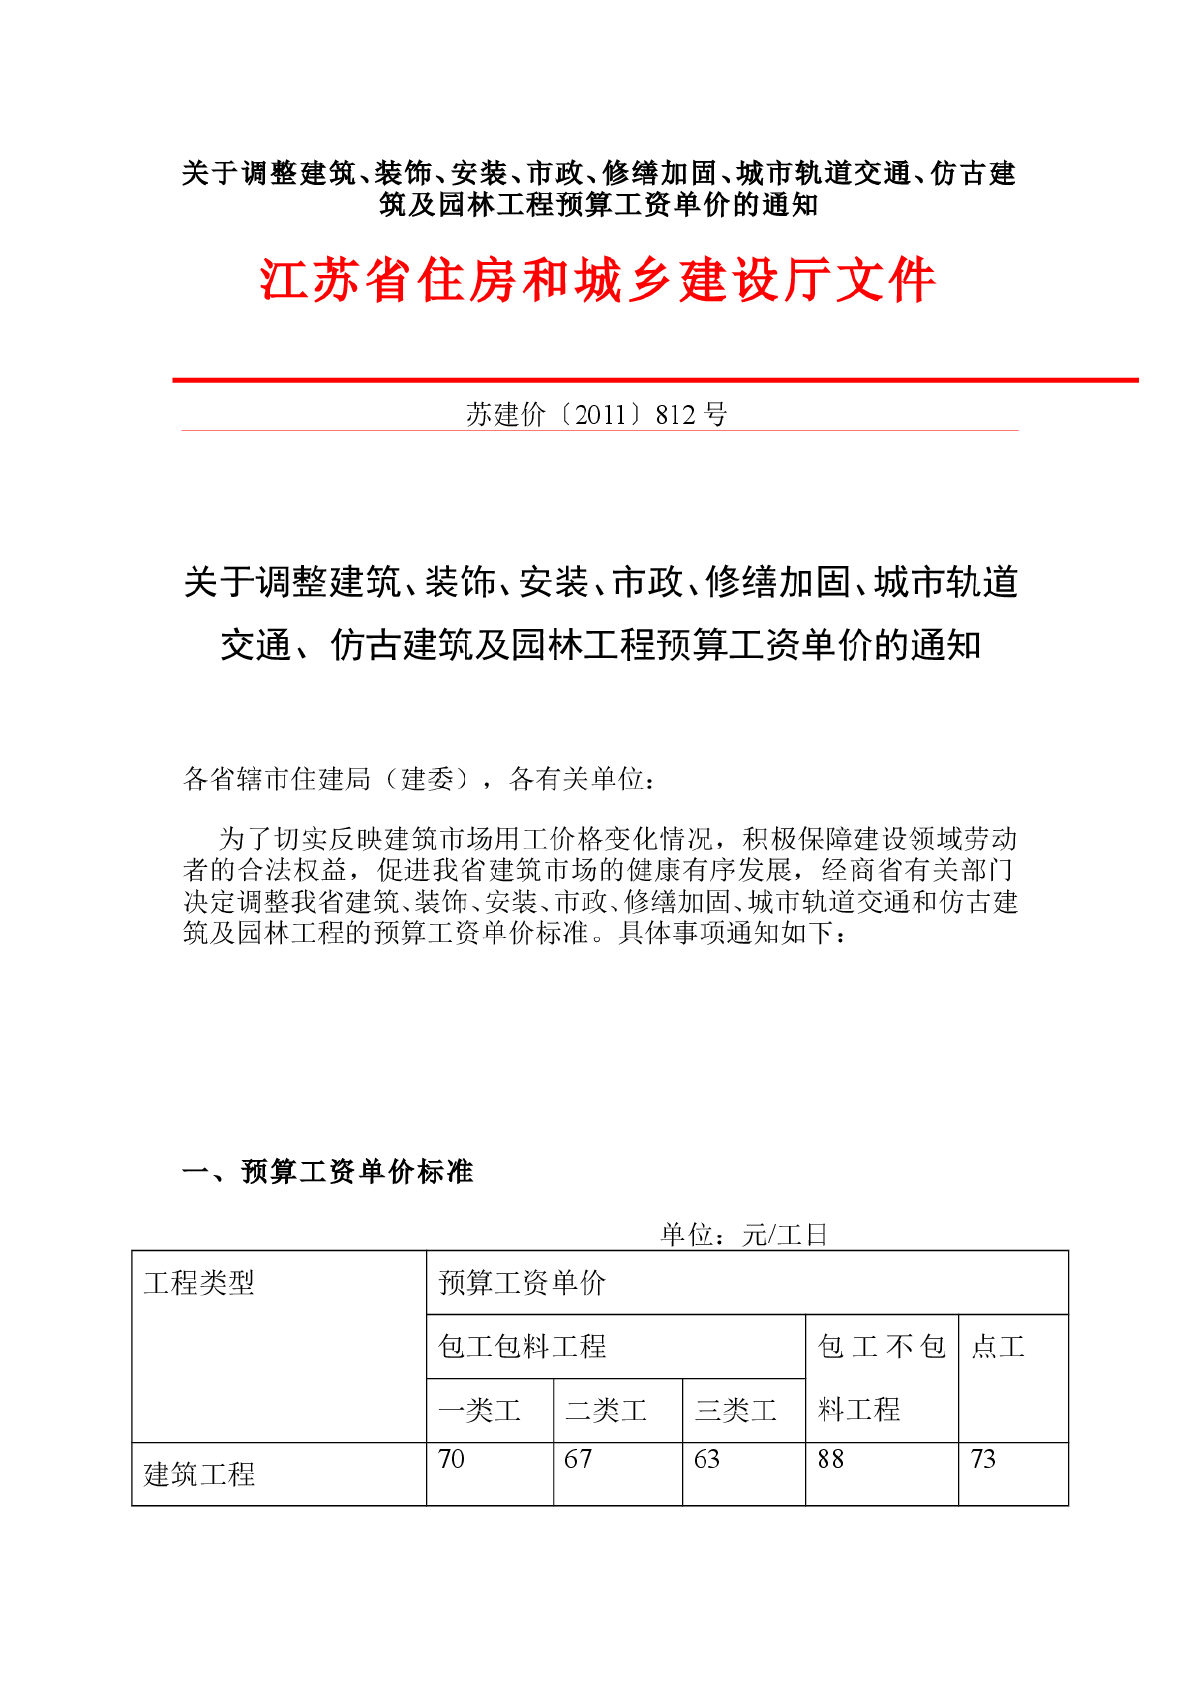 江苏省住房和城乡建设厅文件——2012人工费调整